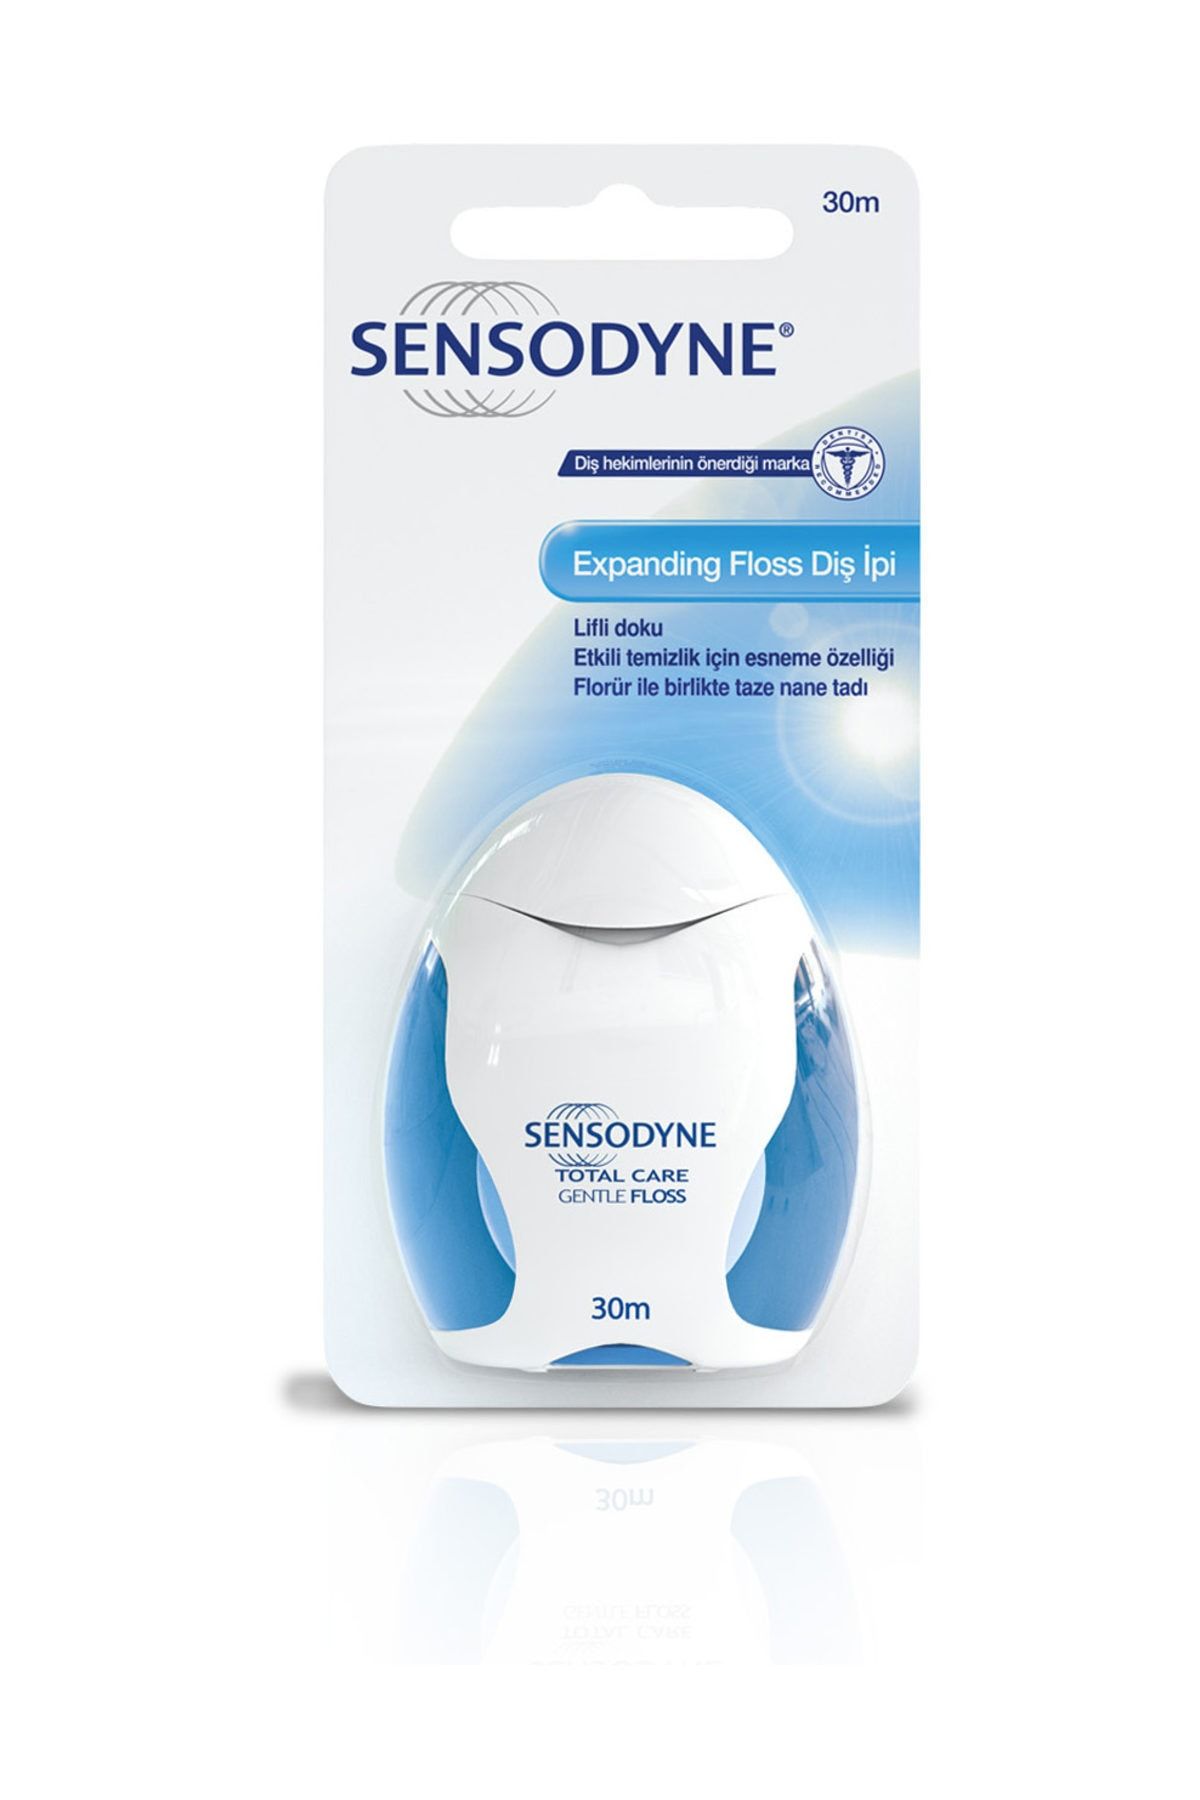 Sensodyne Sensodyne Total Care Gentle Floss Diş İpi 30 M